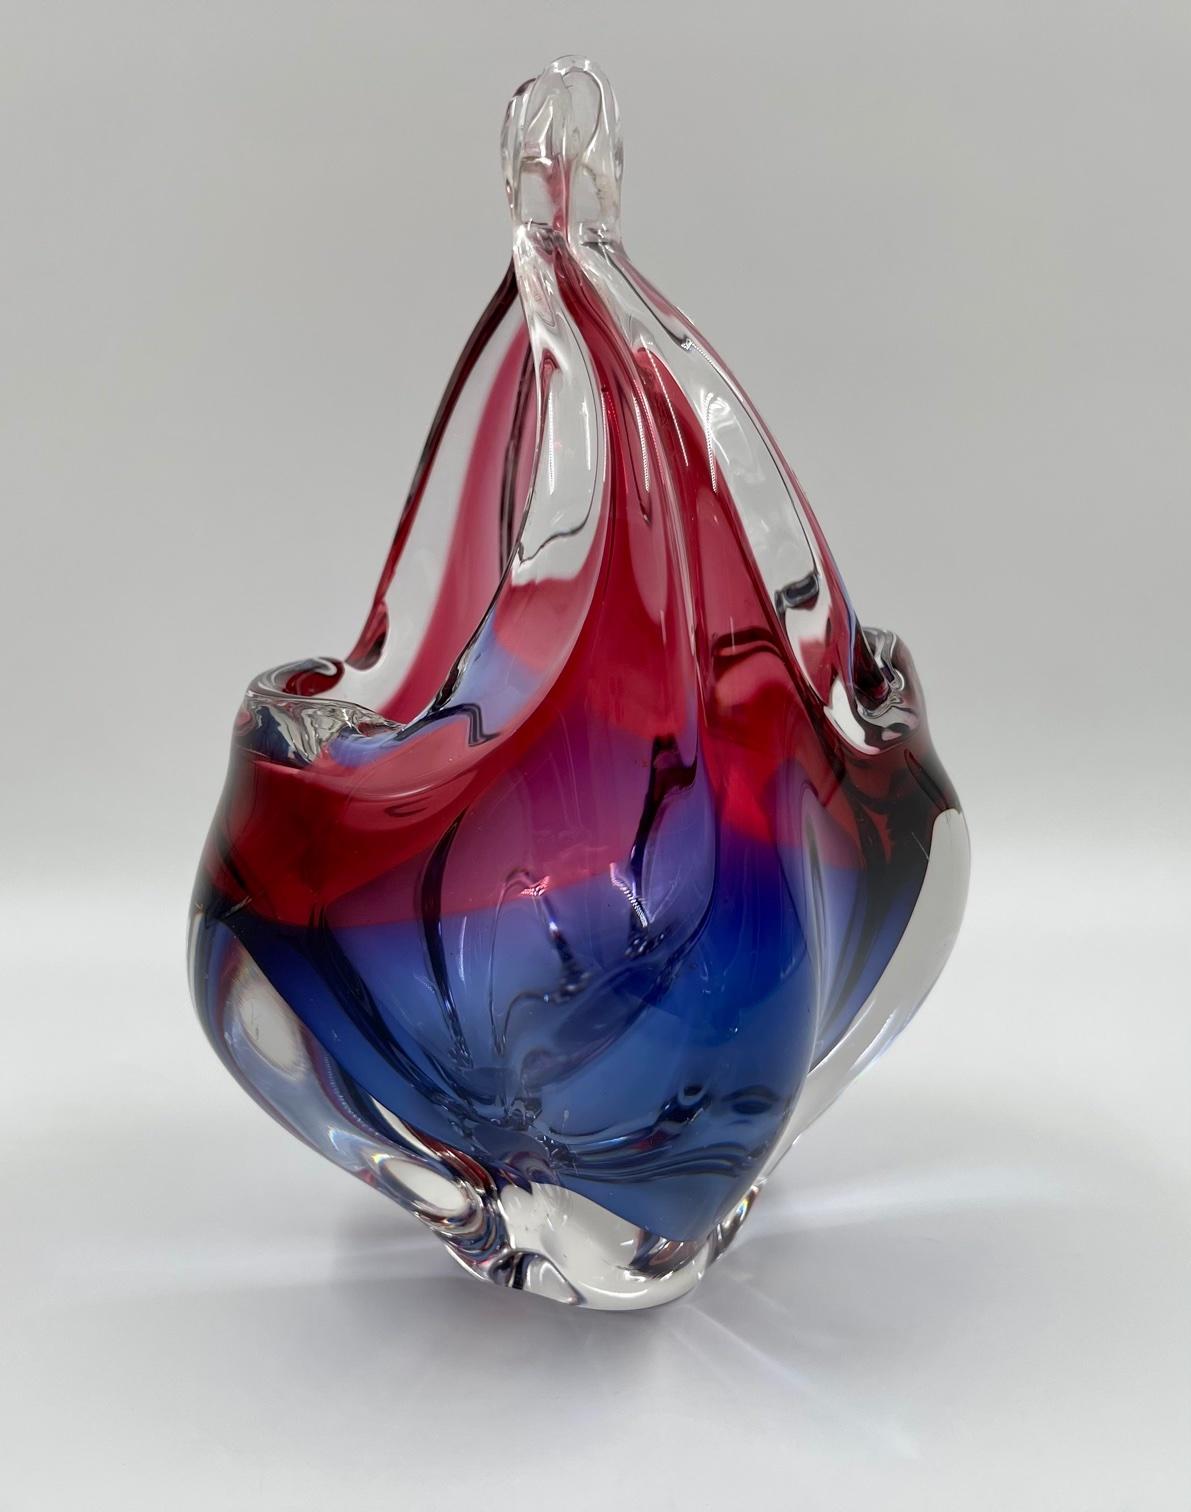 Wir präsentieren einen Kerzenkorb aus tschechischem Kunstglas, der 1960 von Josef Michael Hospodka für die renommierte Glasfirma Chribska hergestellt wurde. Der Halter verfügt über ein kompaktes, zweifarbiges Glas in den Farben Blau und Rot. Dieses